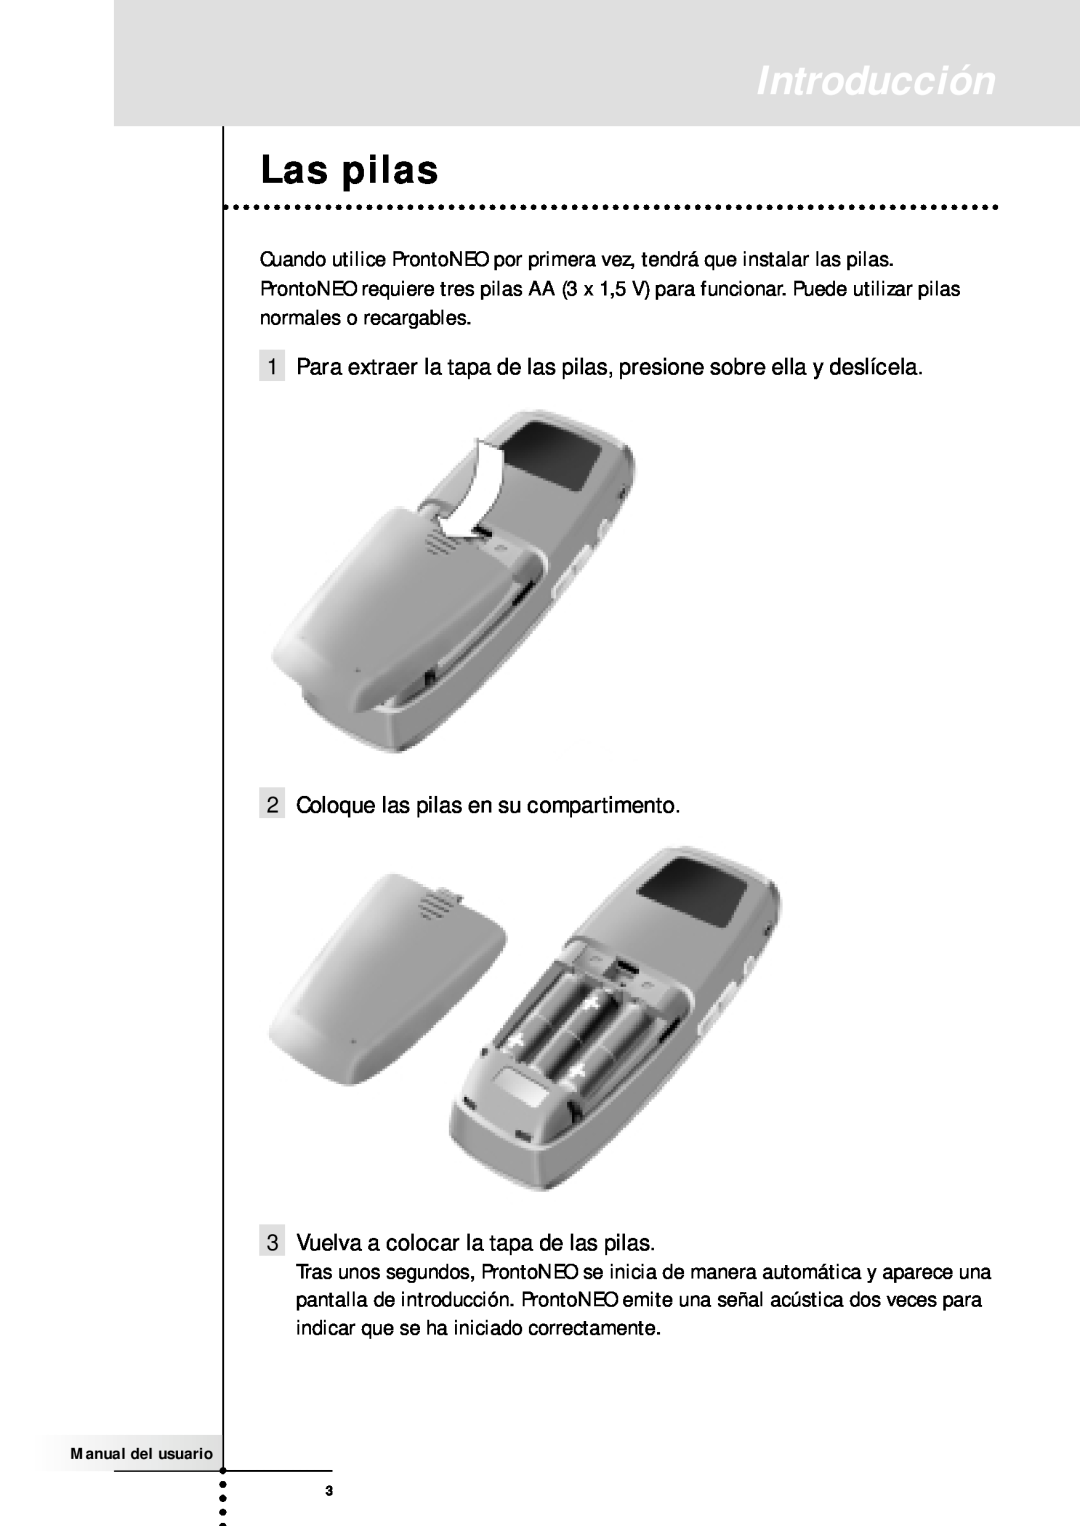 Philips SBC RU930 manual Las pilas, Introducción 